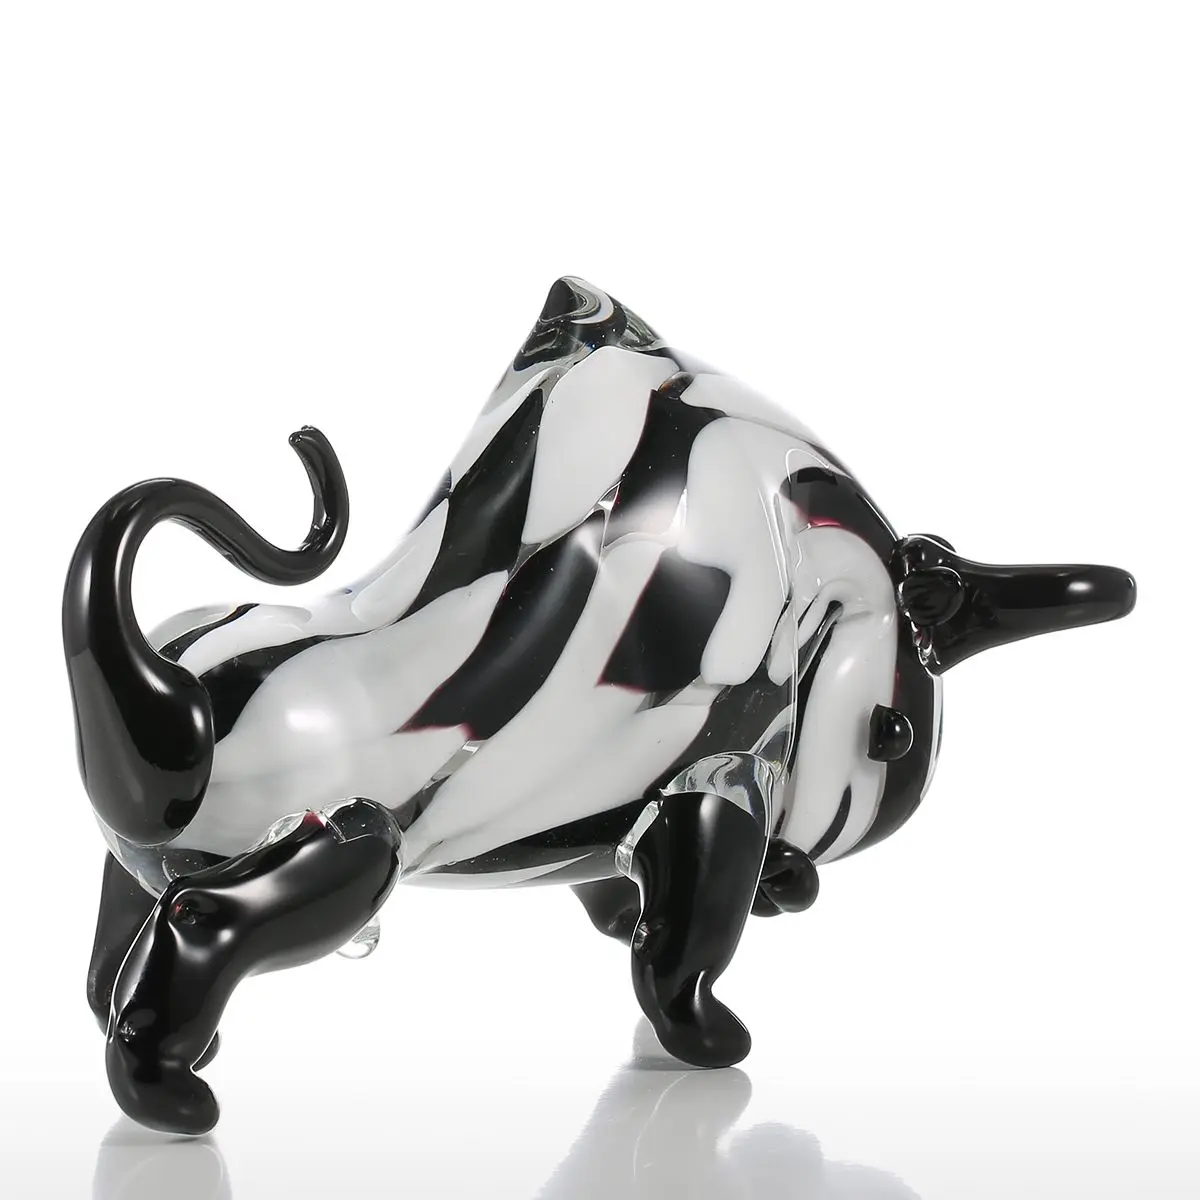 

Tooarts черная и белая стеклянная скульптура для крупного рогатого скота, домашний декор, фигурка животного, стеклянный орнамент, подарок, худо...